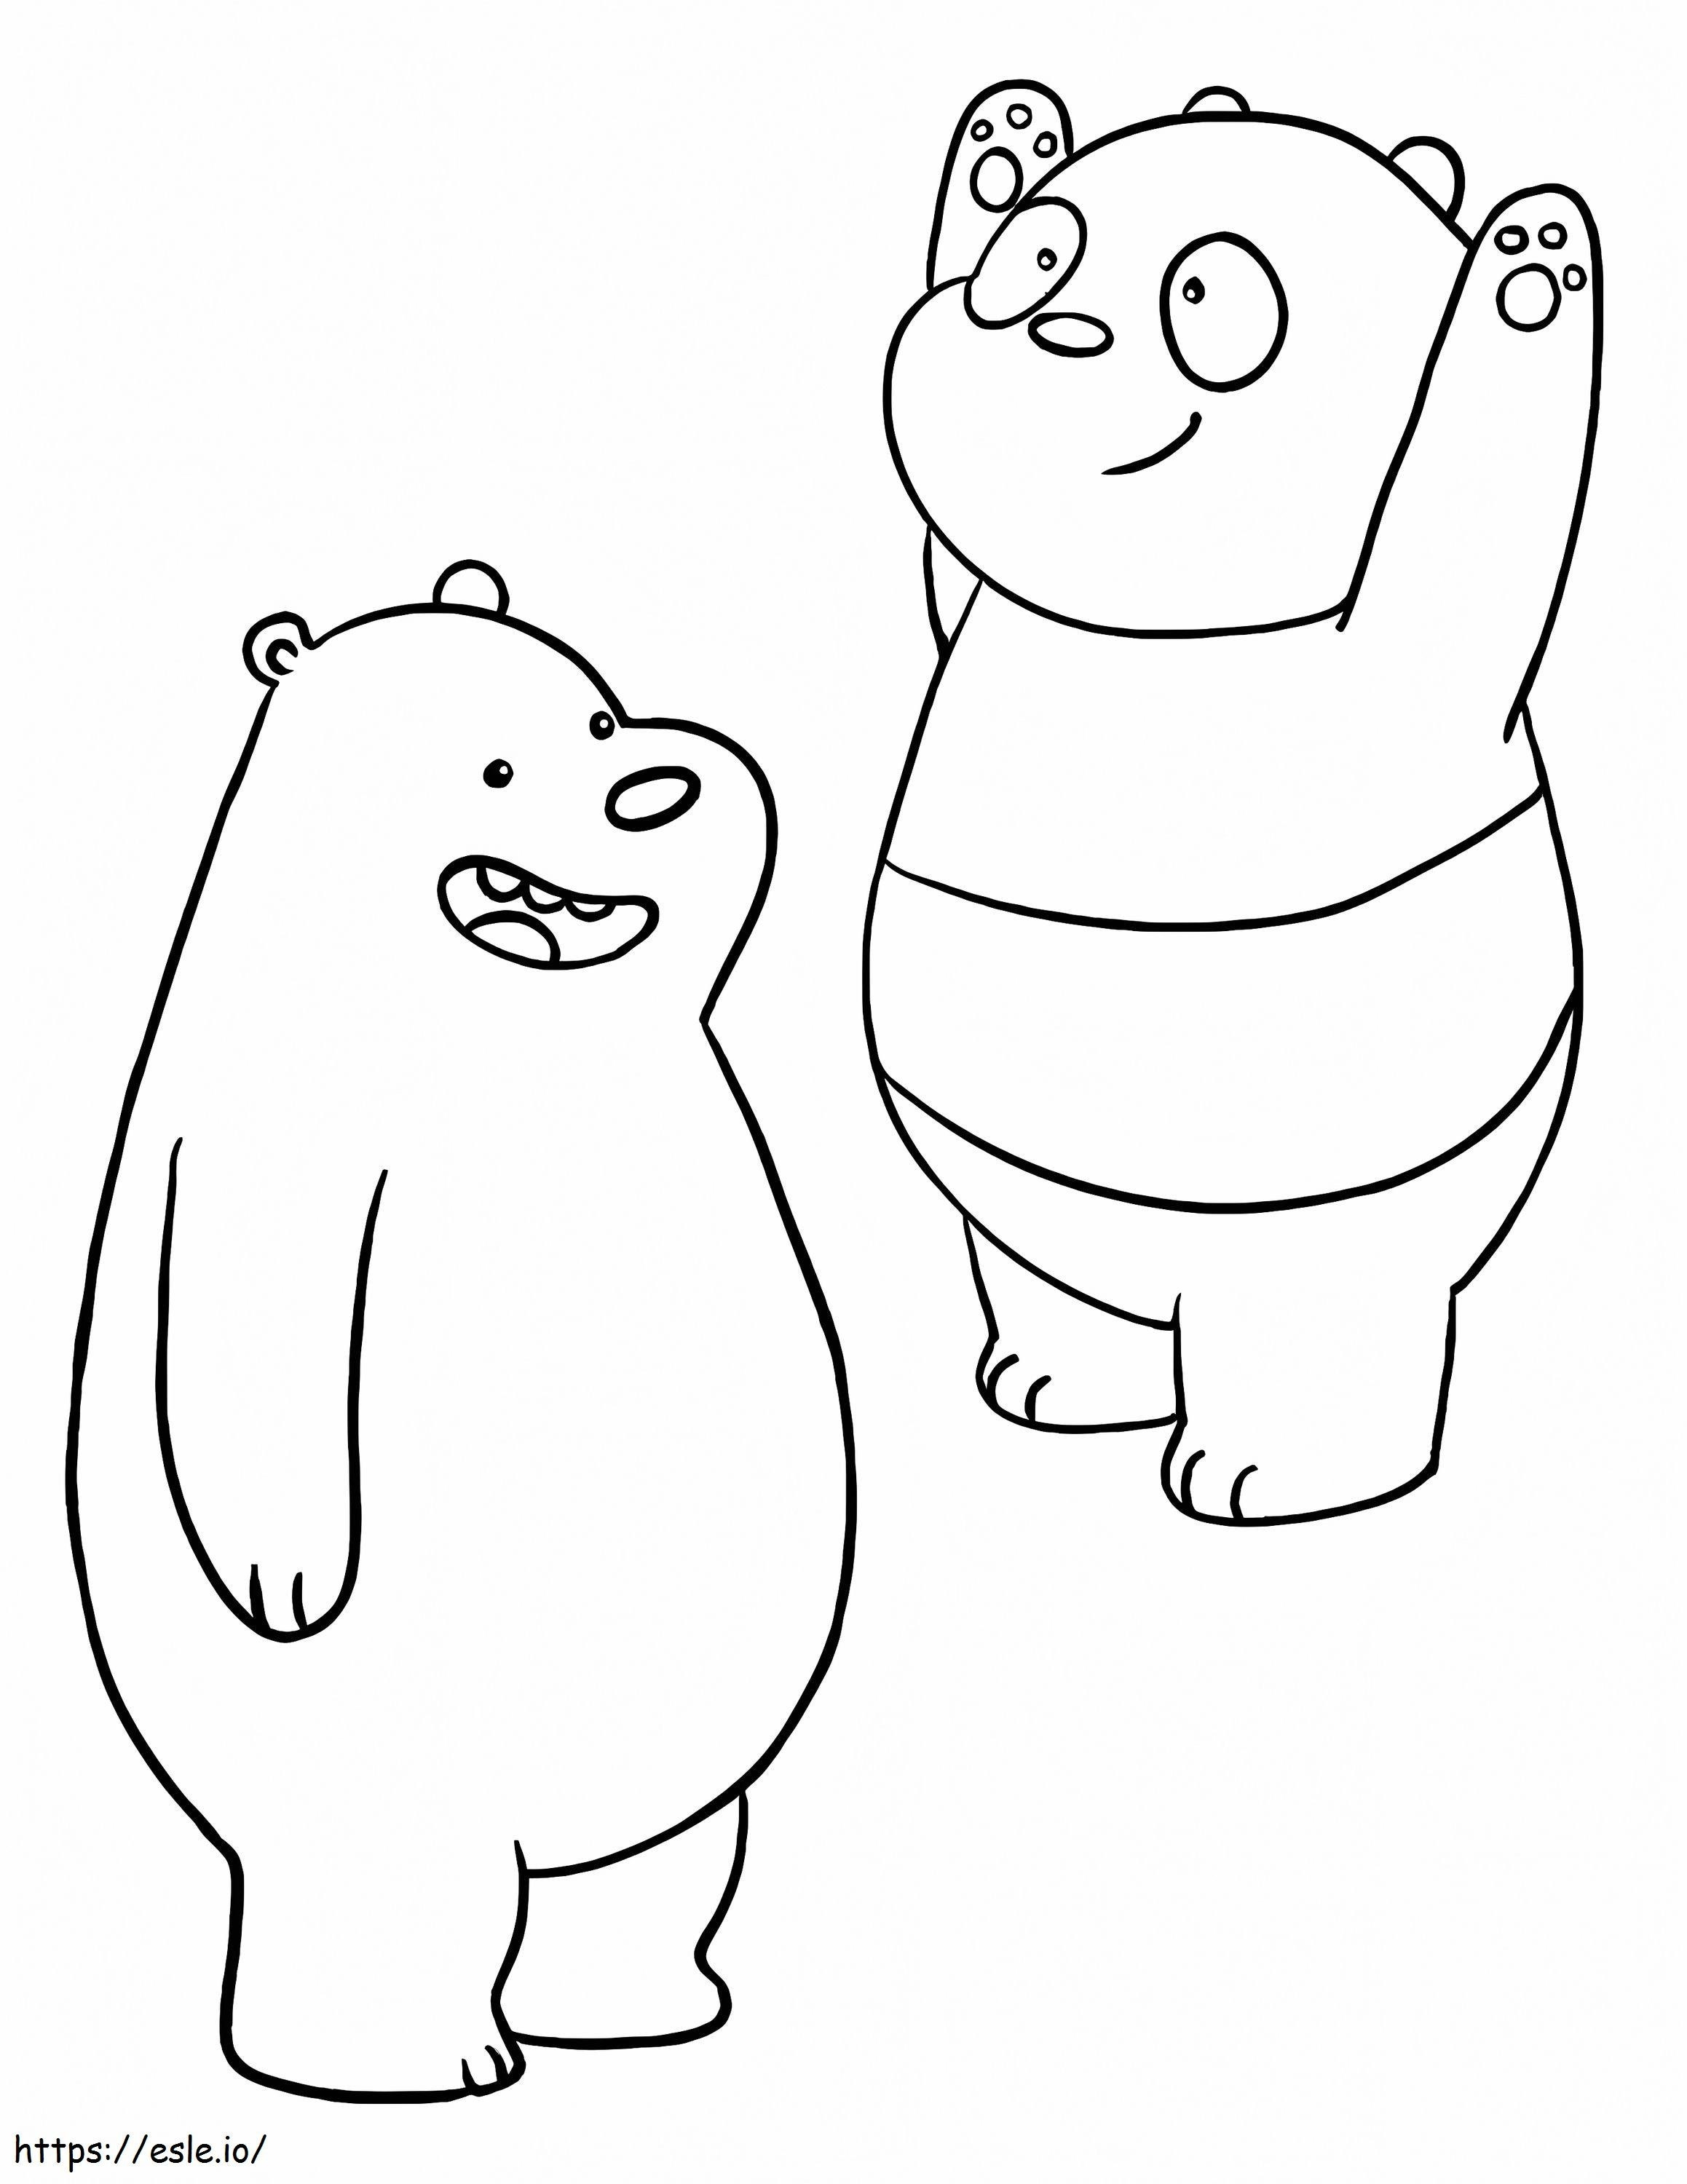 Beruang Coklat dan Panda Gambar Mewarnai